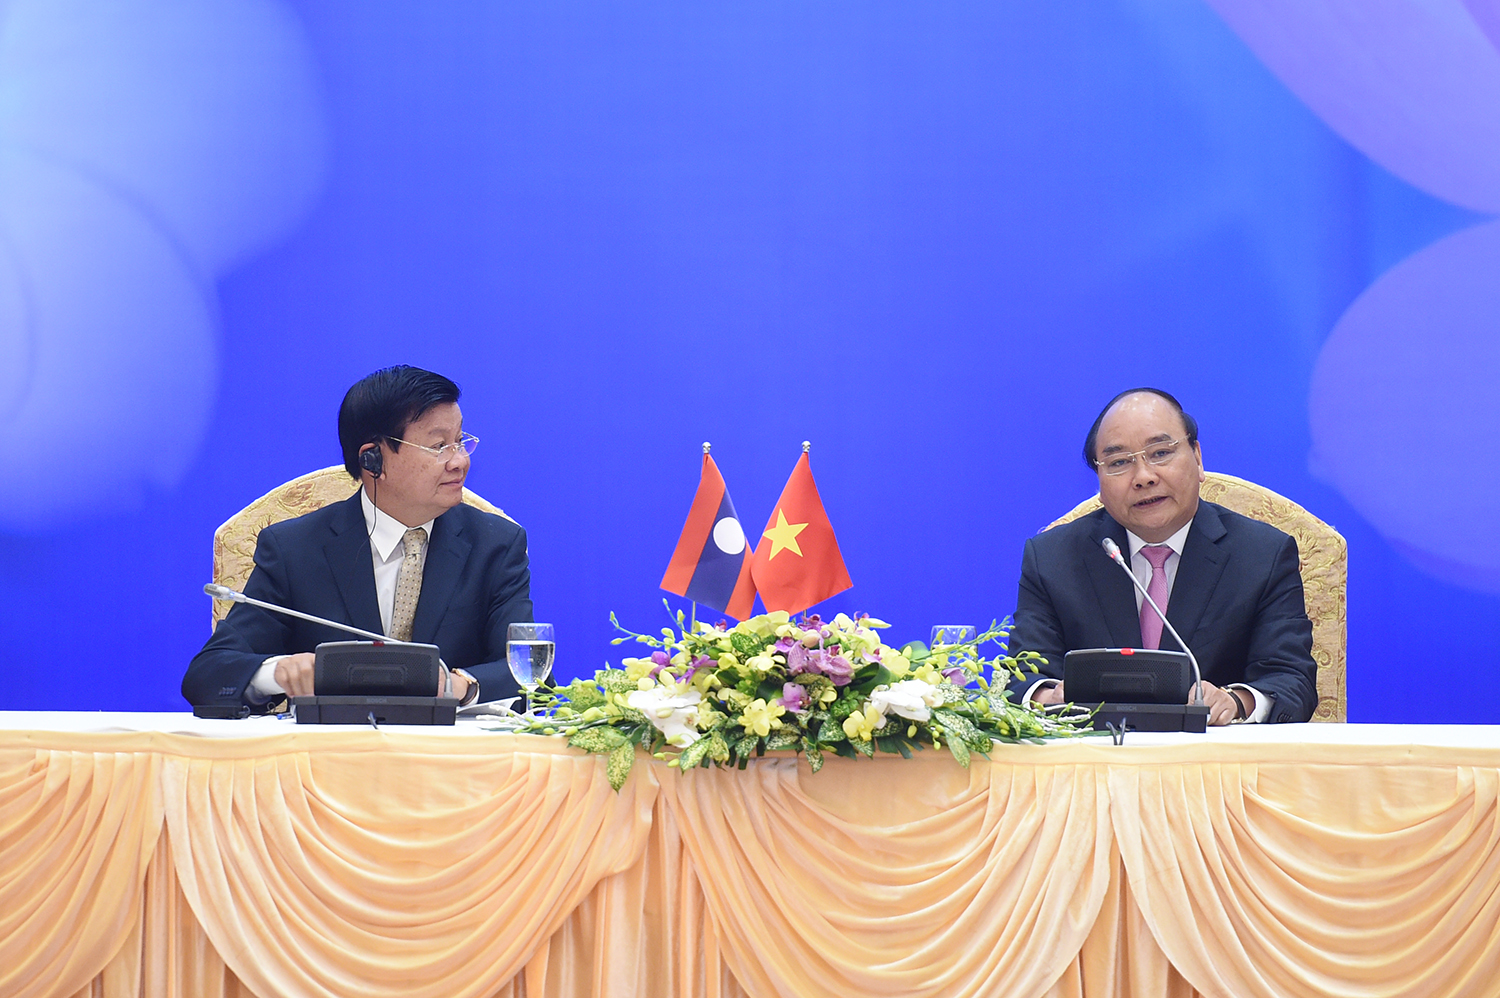 Thủ tướng Nguyễn Xuân Phúc và Thủ tướng Lào Thongloun Sisoulith. Ảnh: VGP